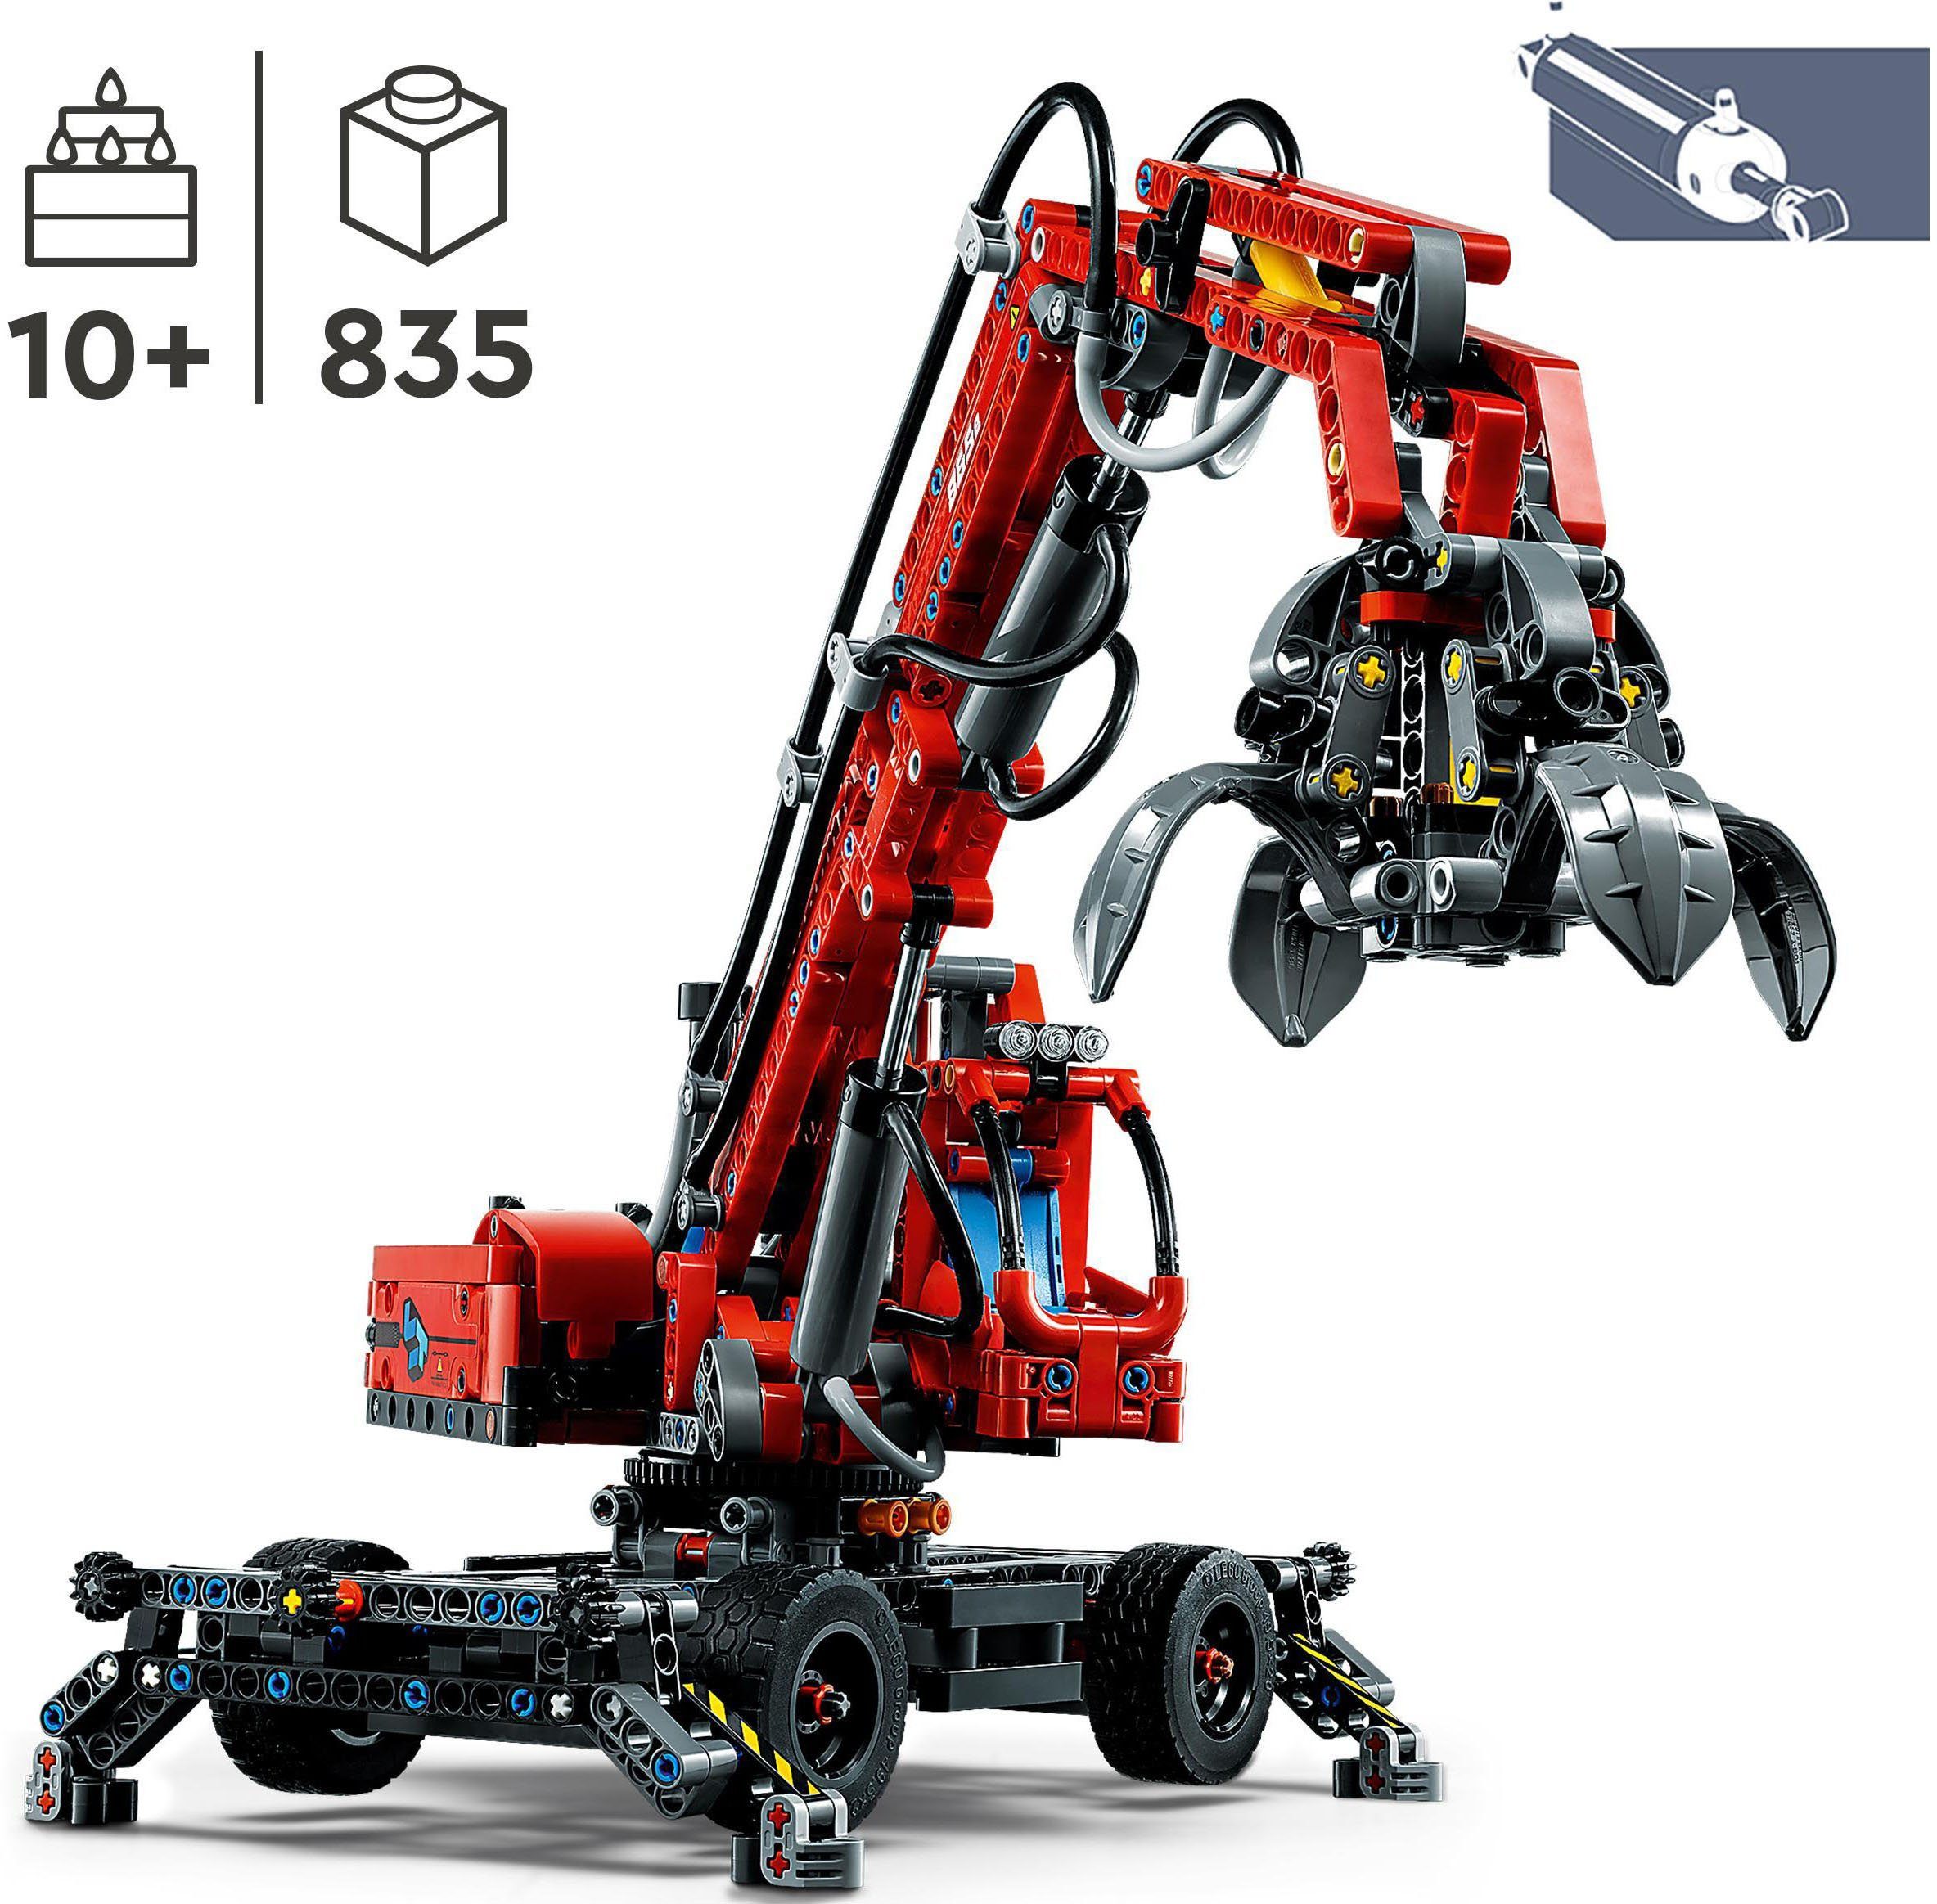 Europe Umschlagbagger Konstruktionsspielsteine (42144), Technic, (835 LEGO® St), LEGO® Made in